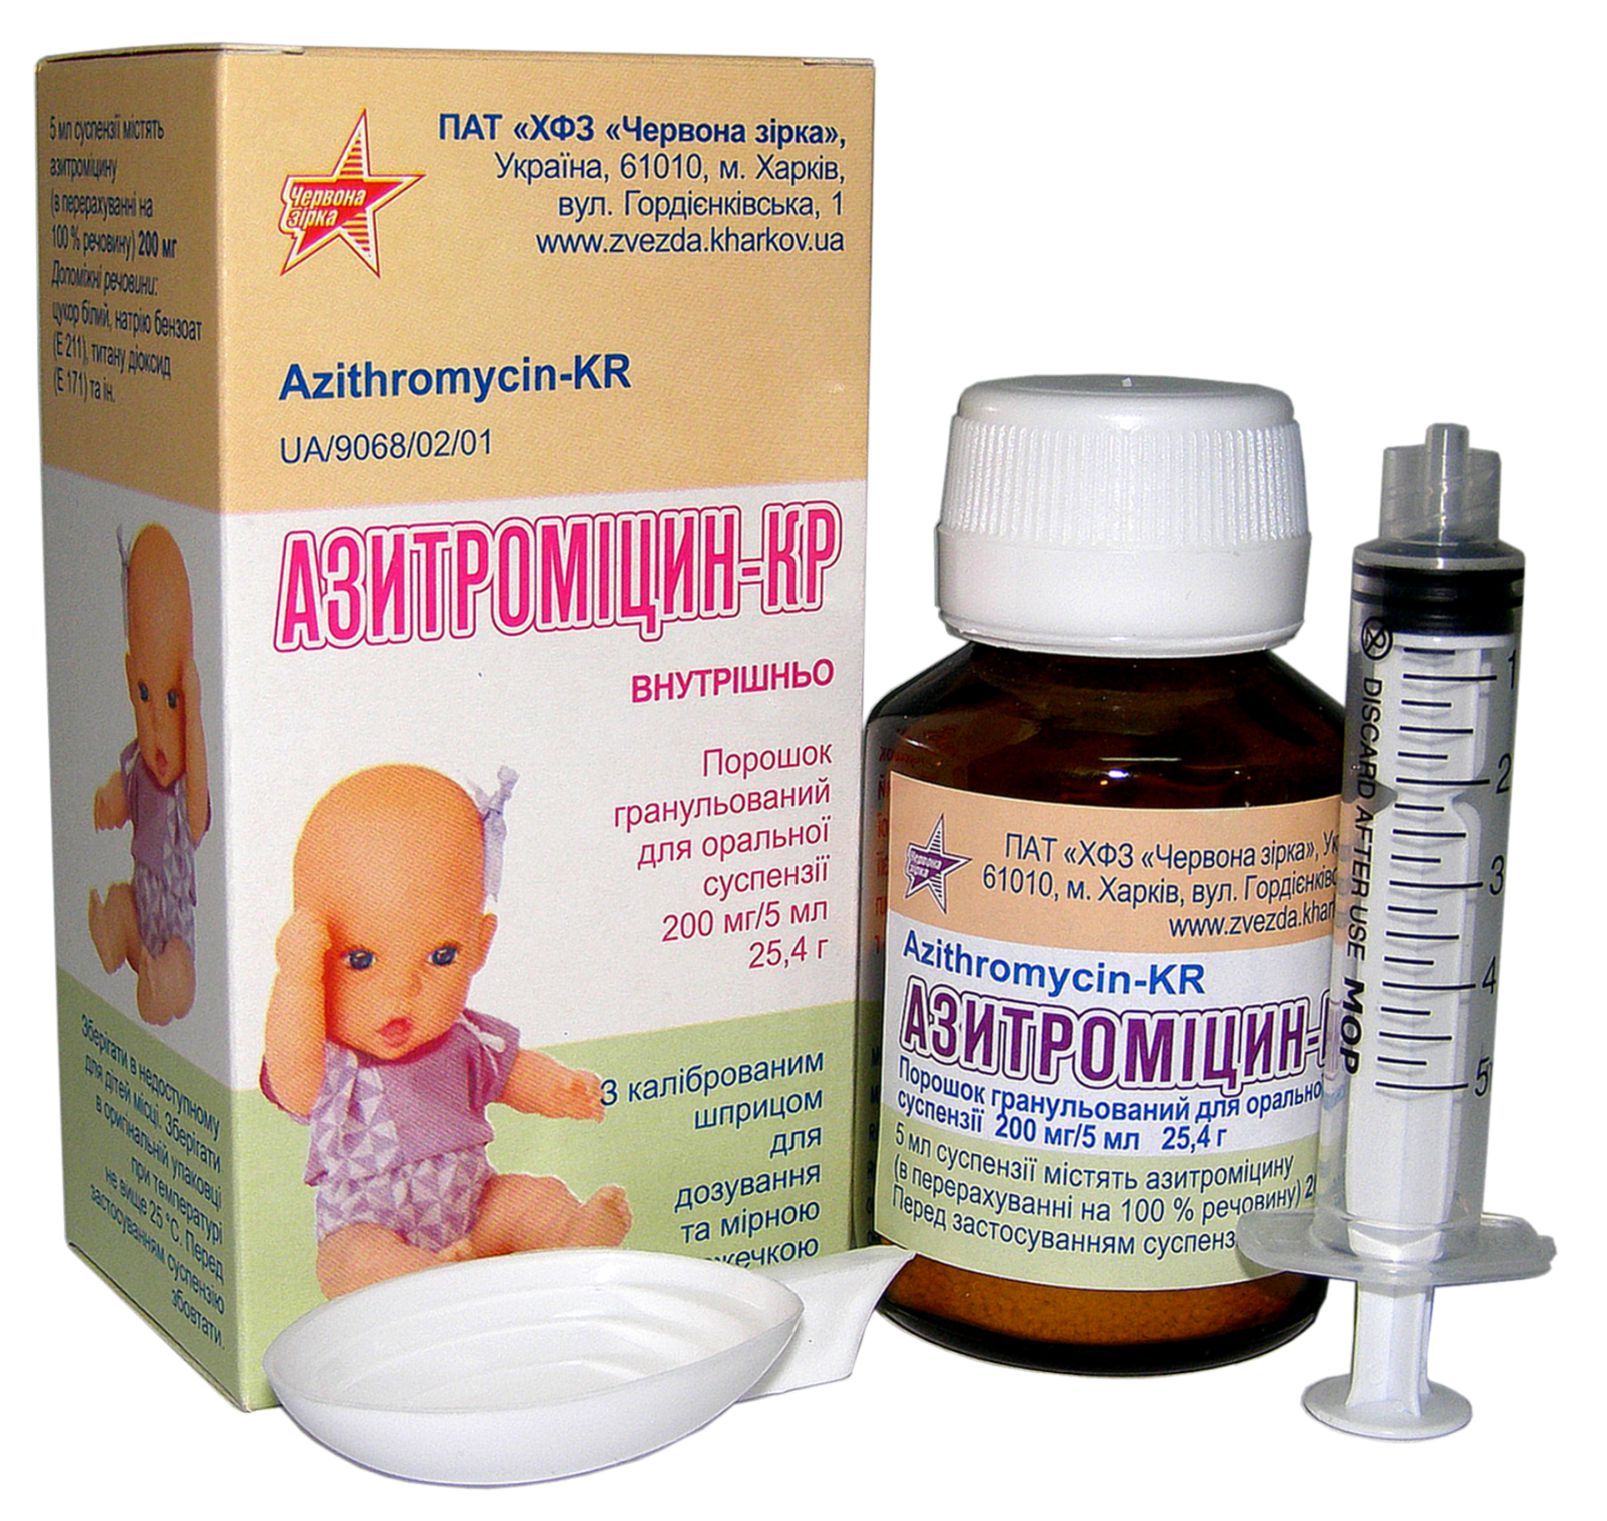 Азитромицин-КР, порошок гранулированный для оральной суспензии 200 мг/5 .